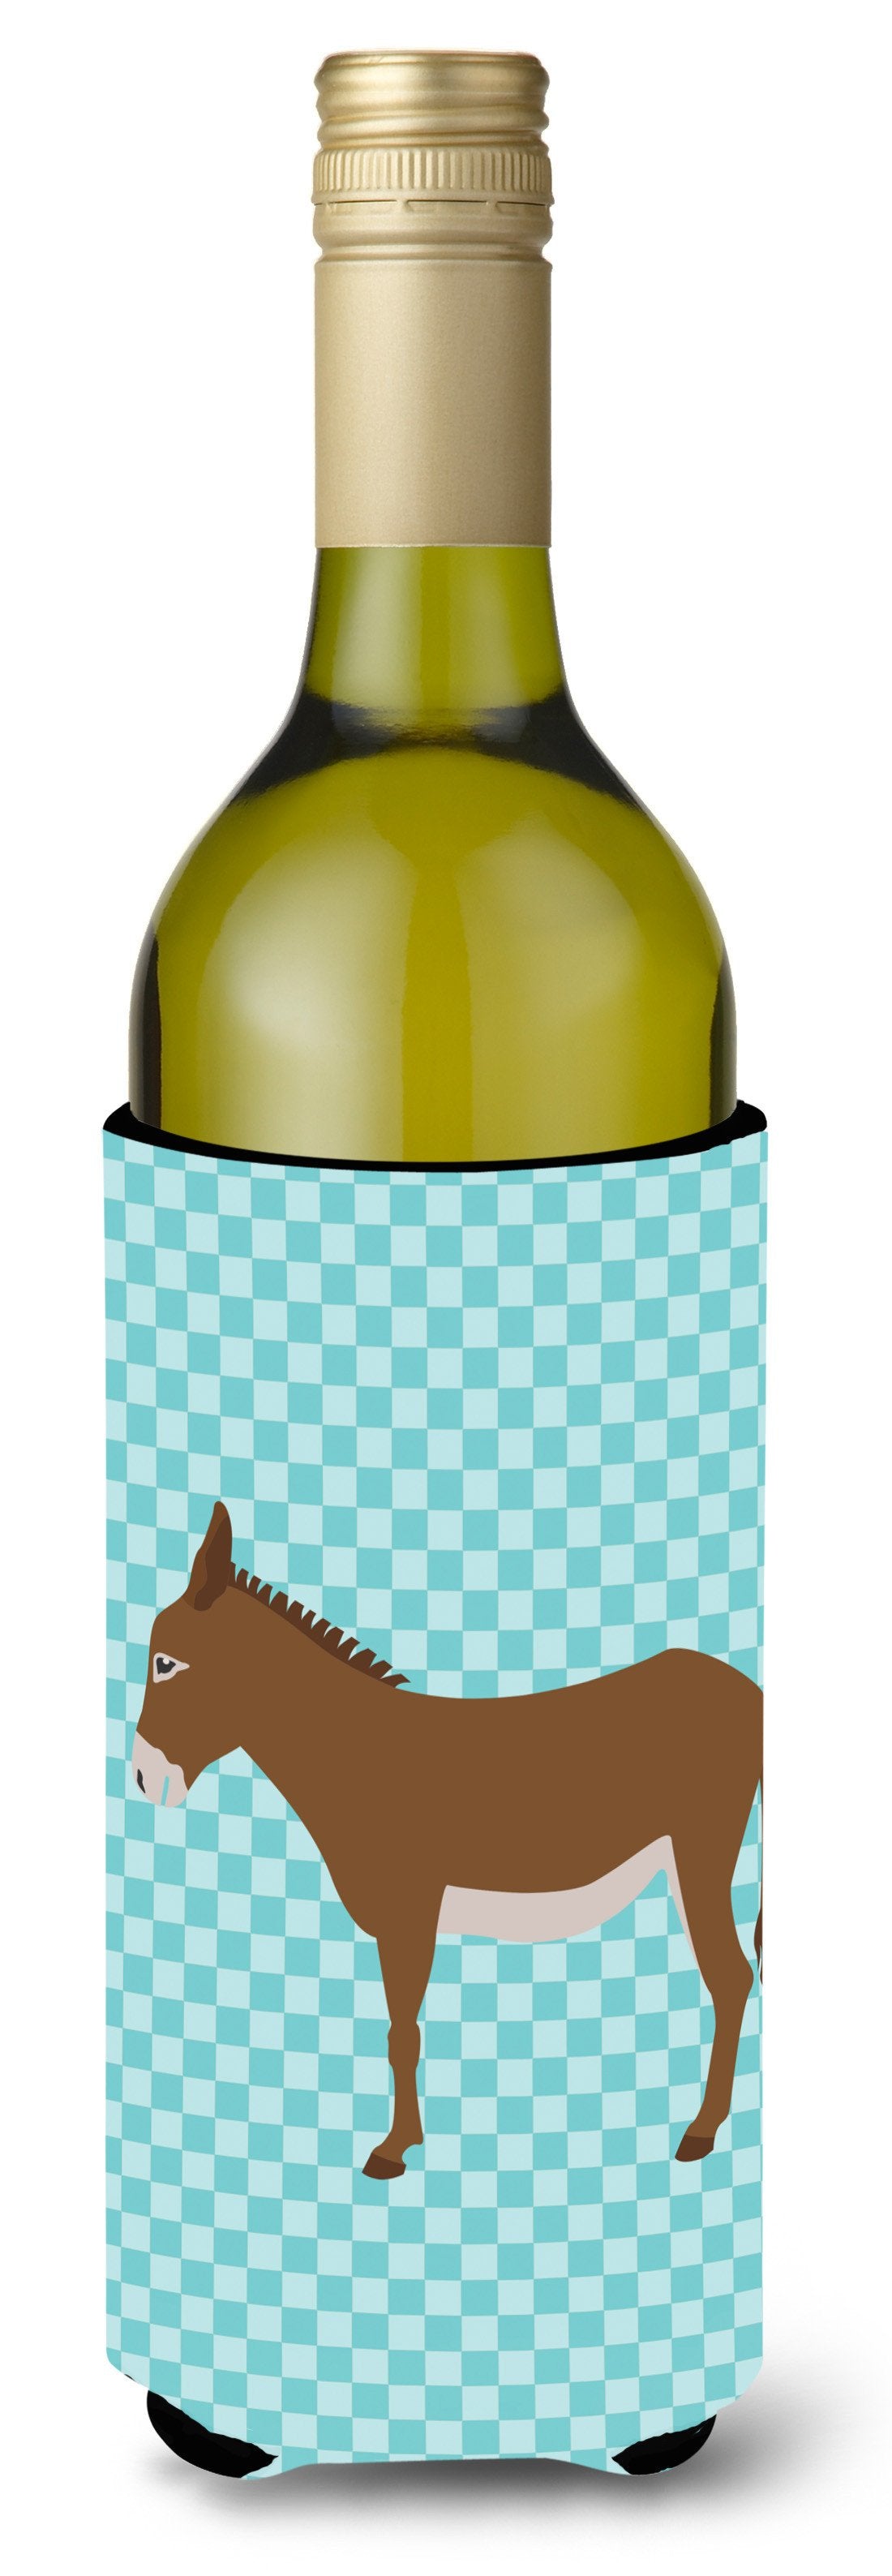 Cotentin Donkey Blue Check Wine Bottle Beverge Insulator Hugger BB8023LITERK by Caroline's Treasures